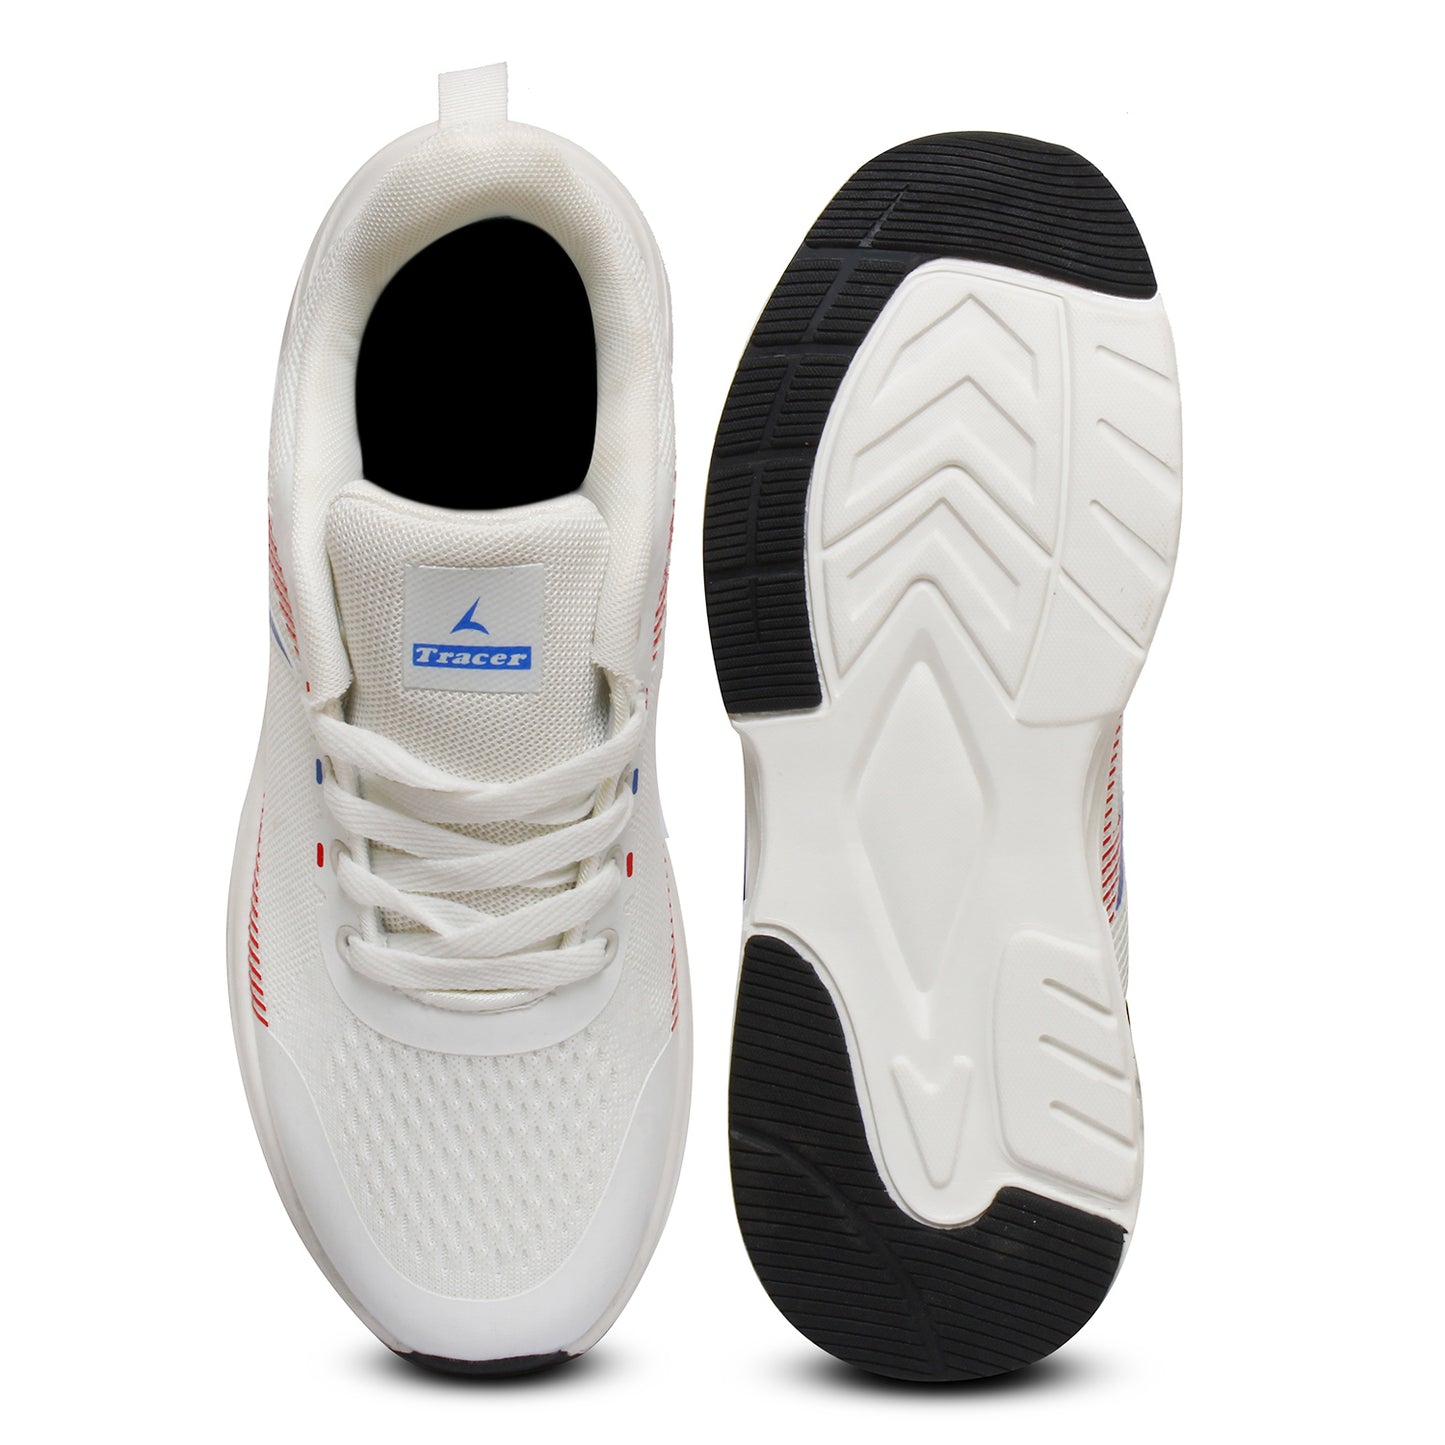  Men's Running Shoes White